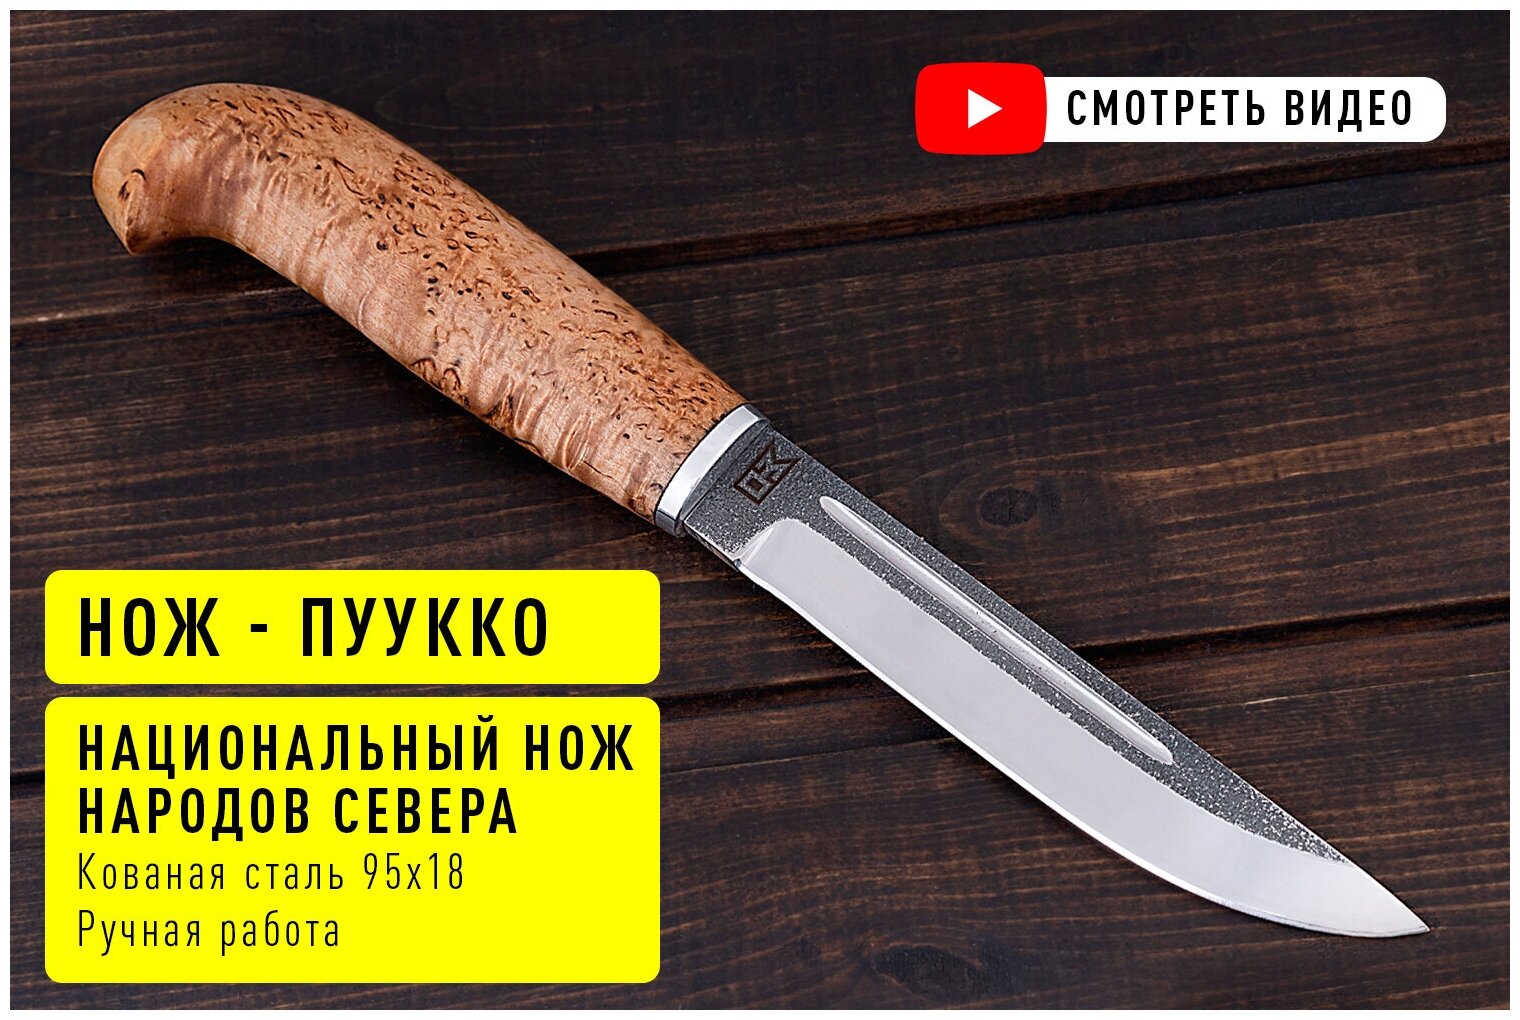 Охотничий финский нож из кованой стали 95х18 с рукояткой из Карельский березы